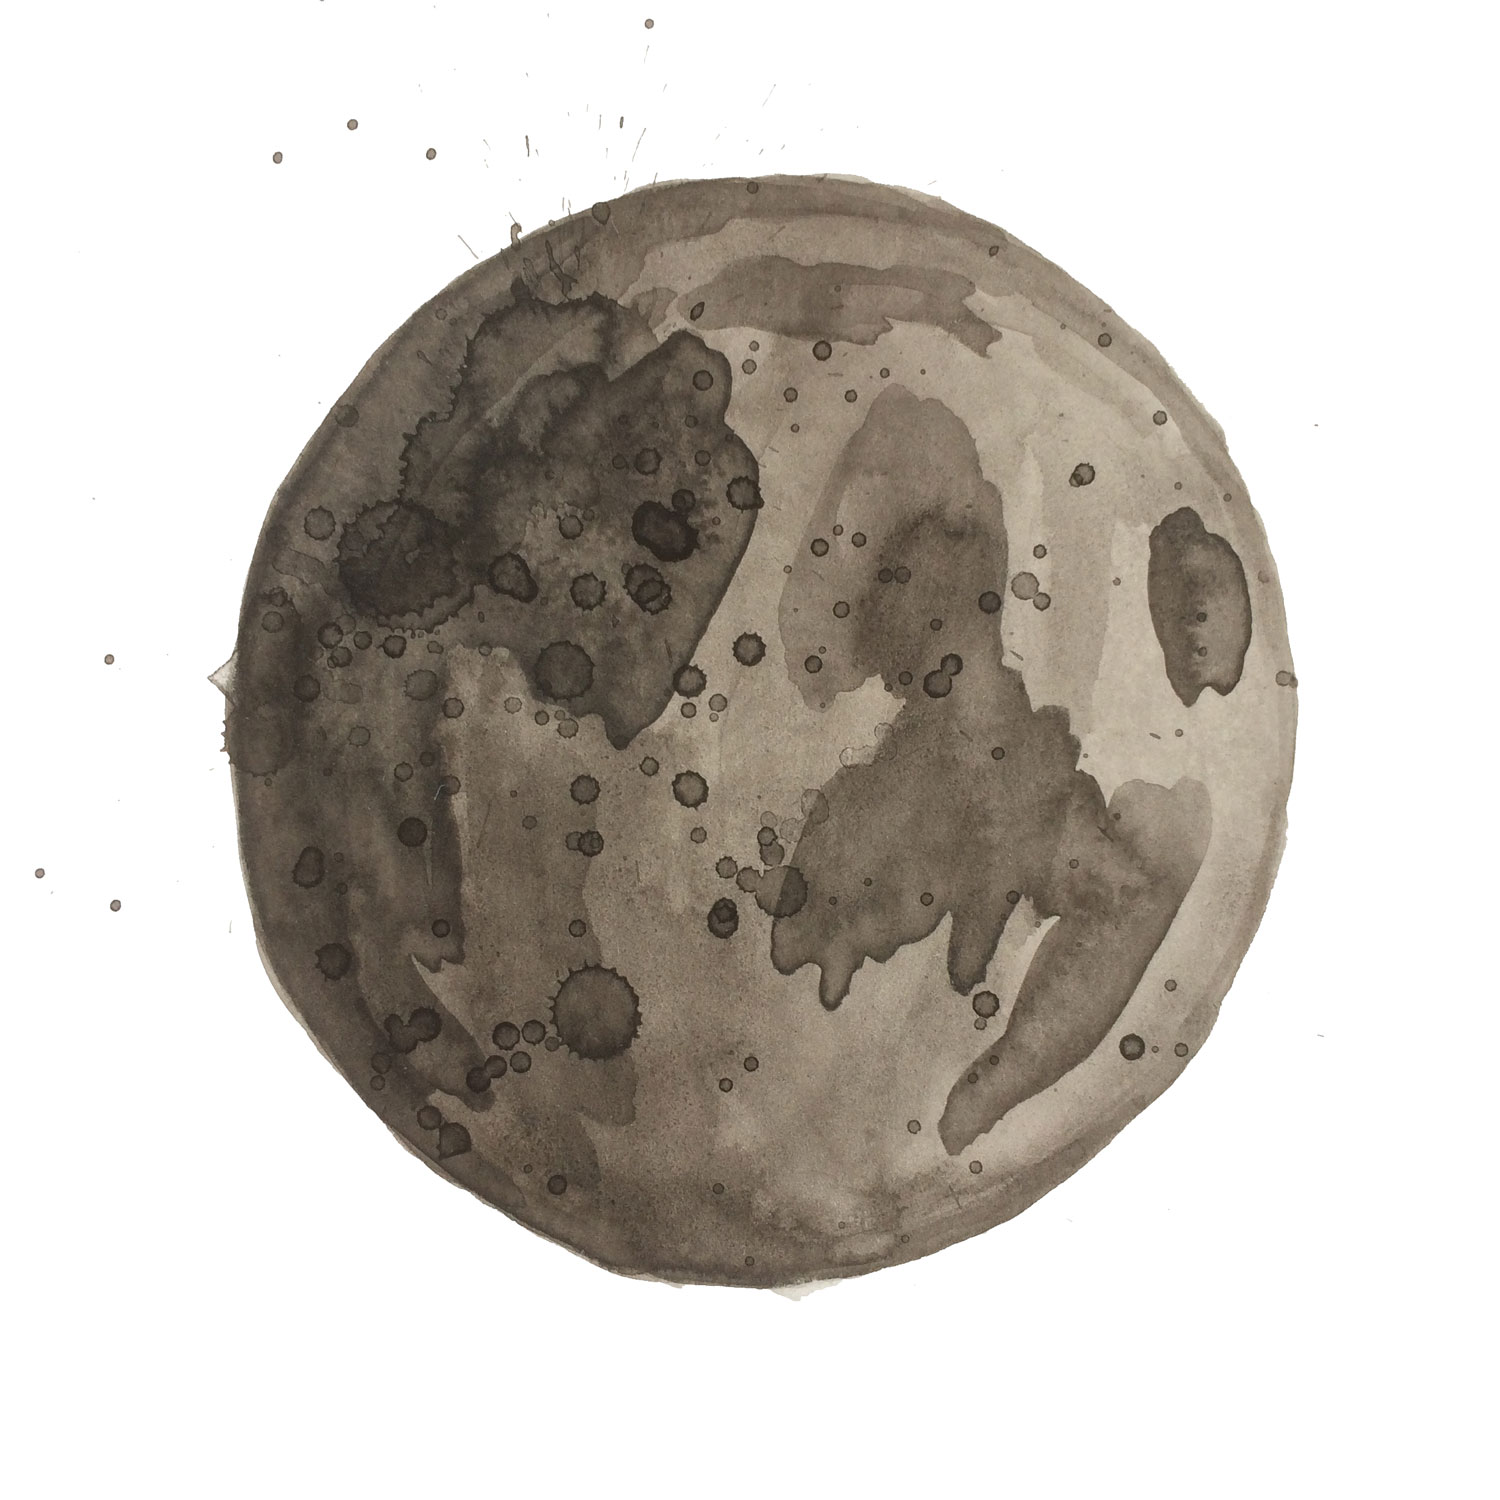 full-moon-splatter-illustration-matthew-woods.jpg